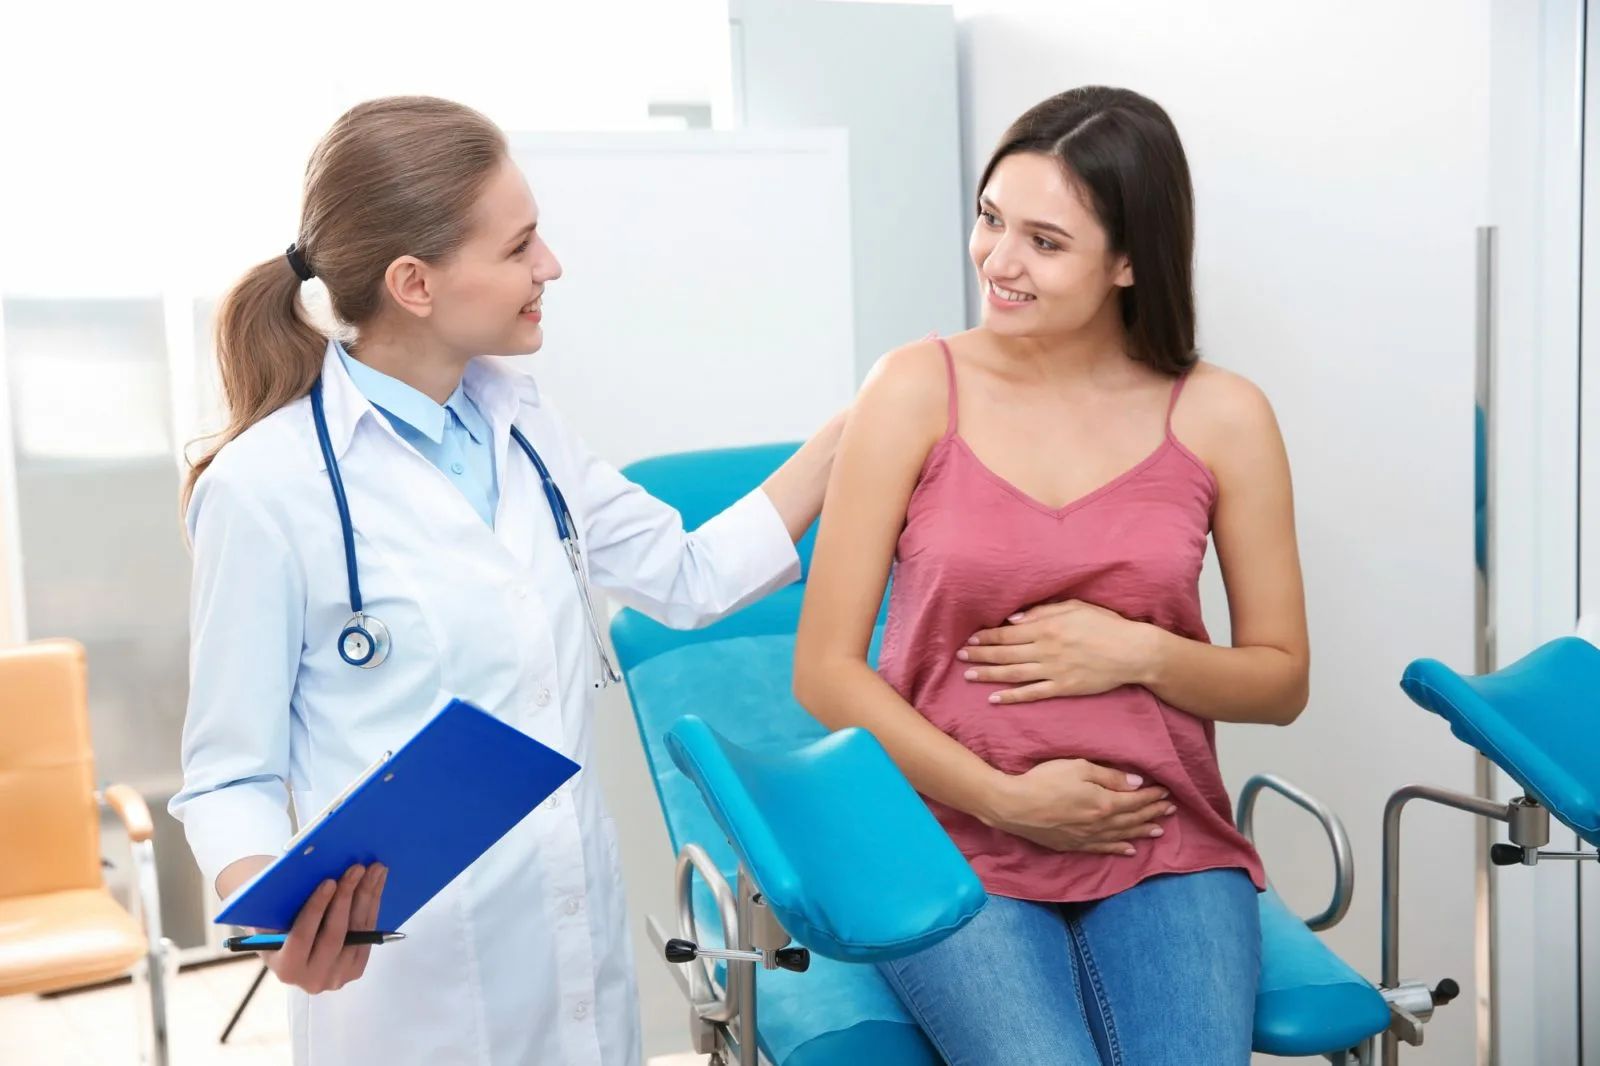 Беременной жена гинекологе